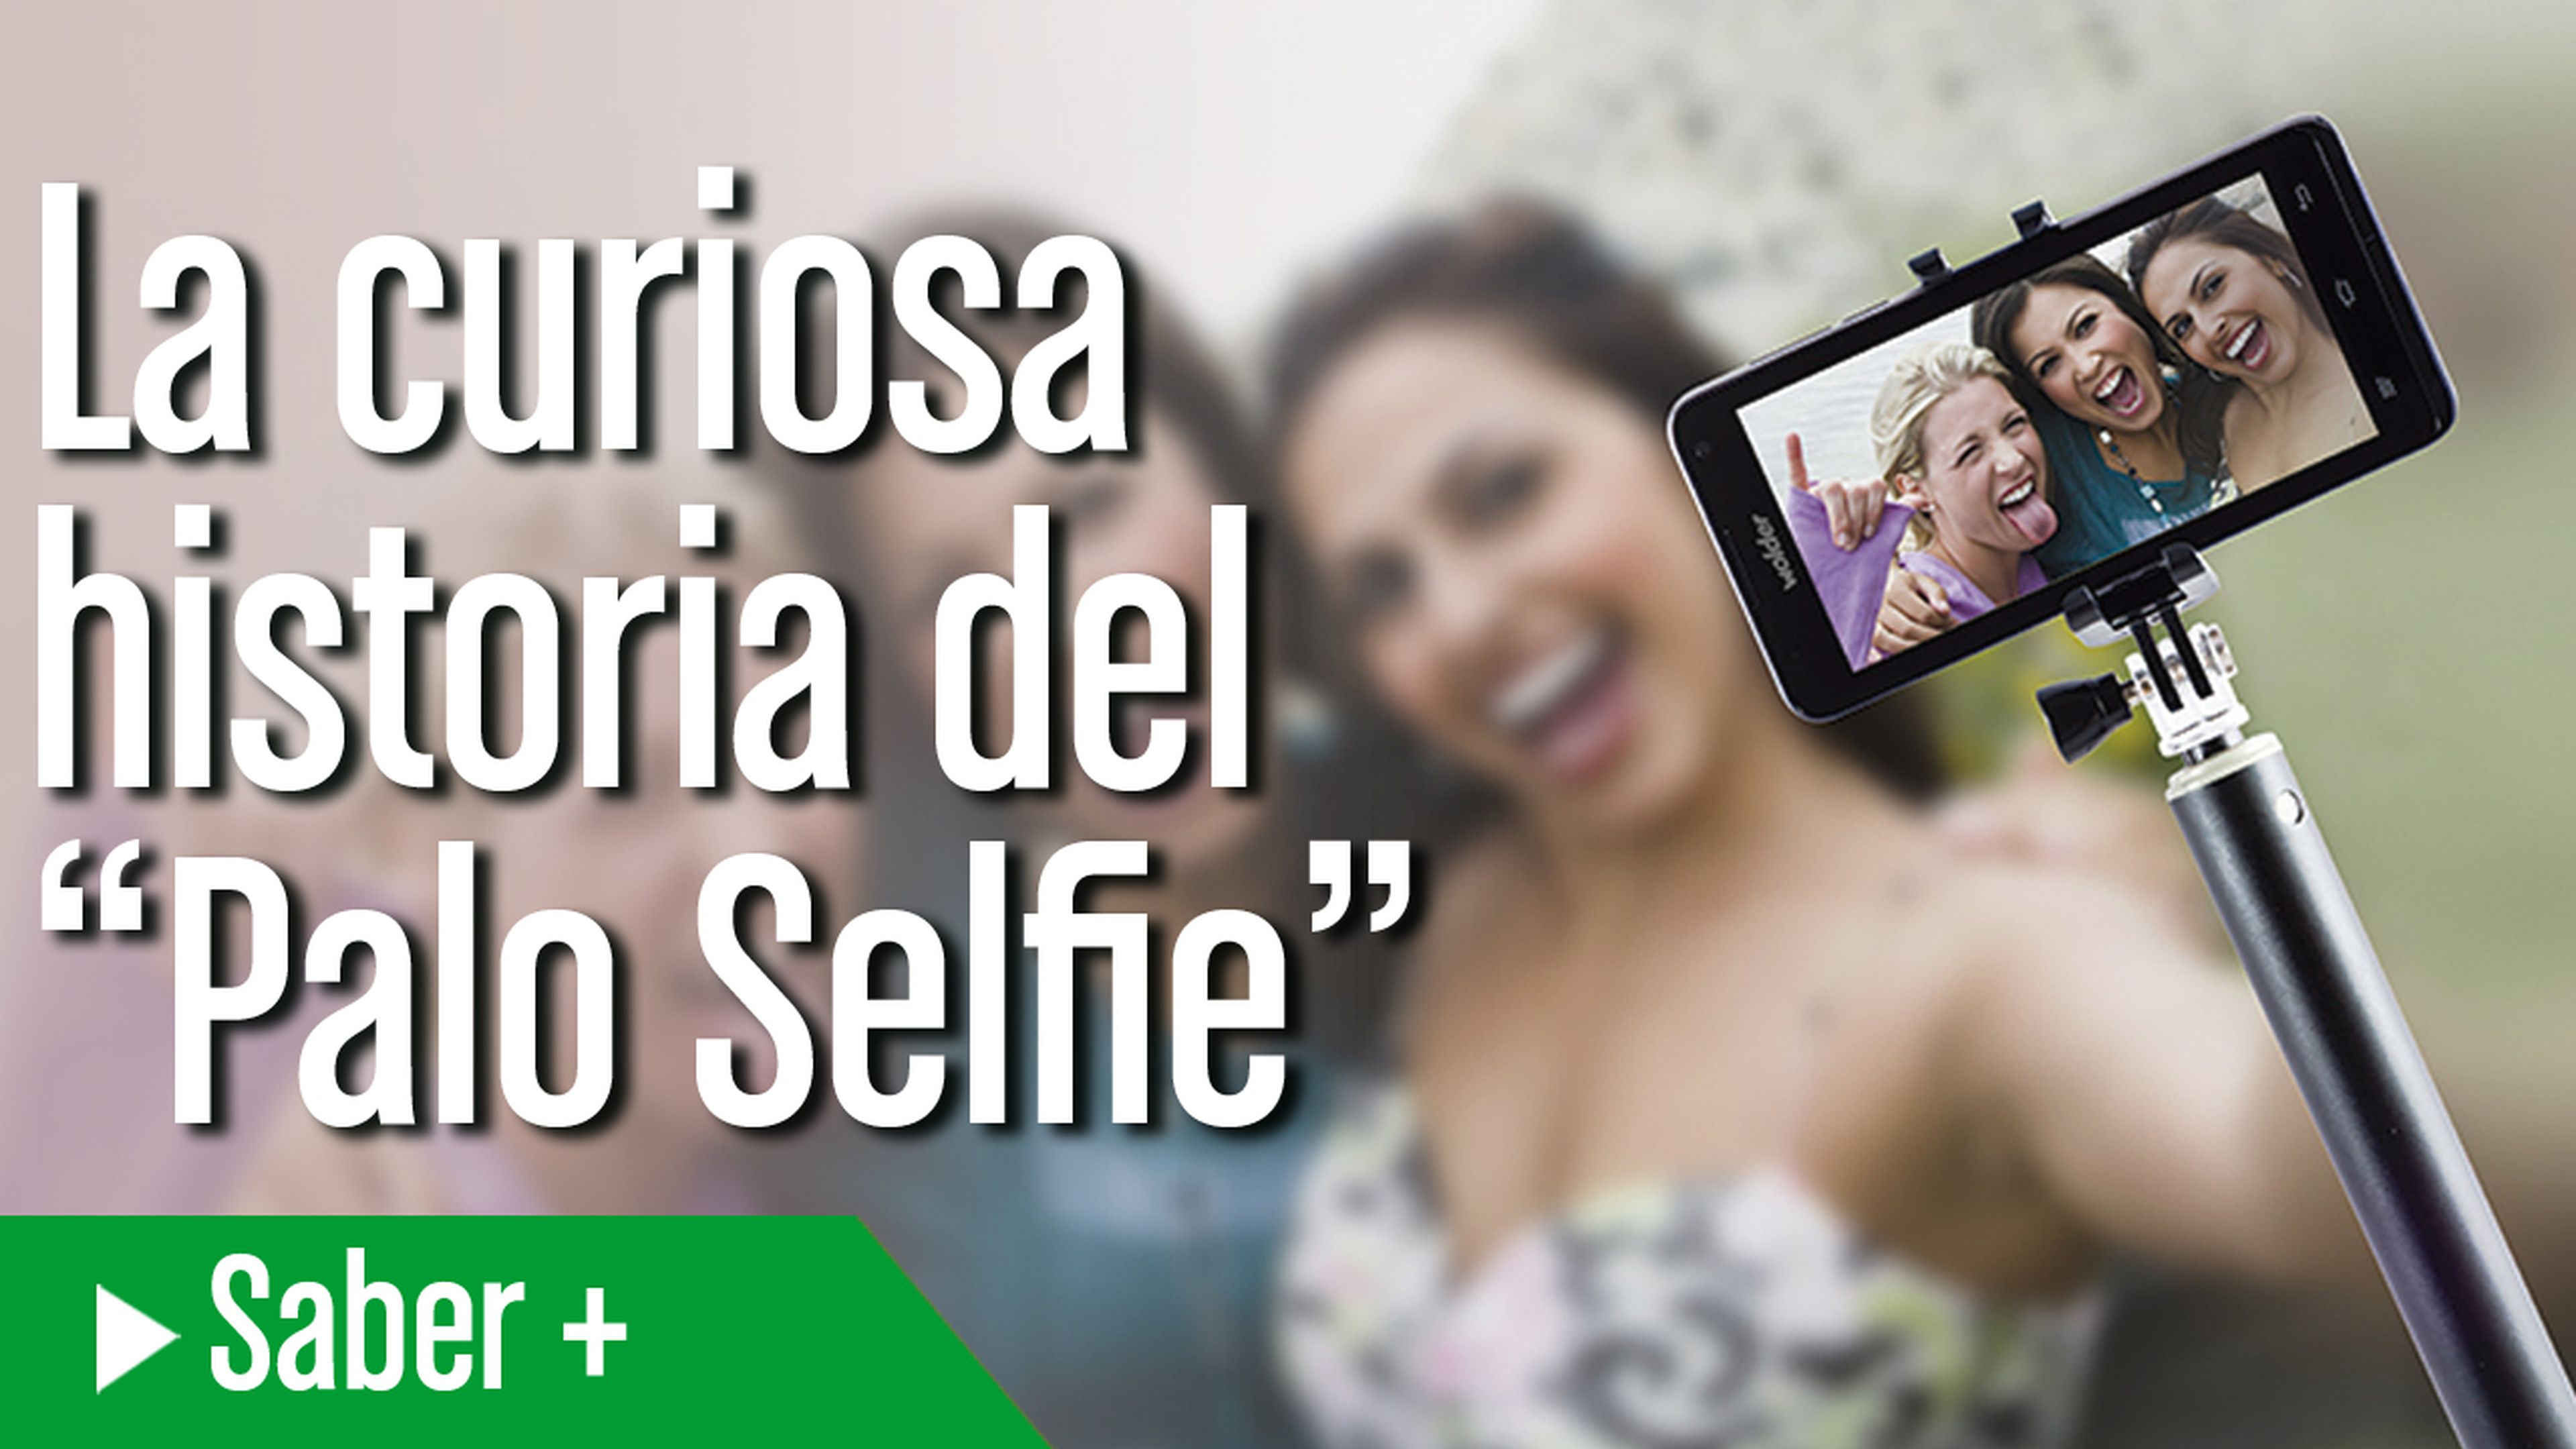 La curiosa historia del palo selfie